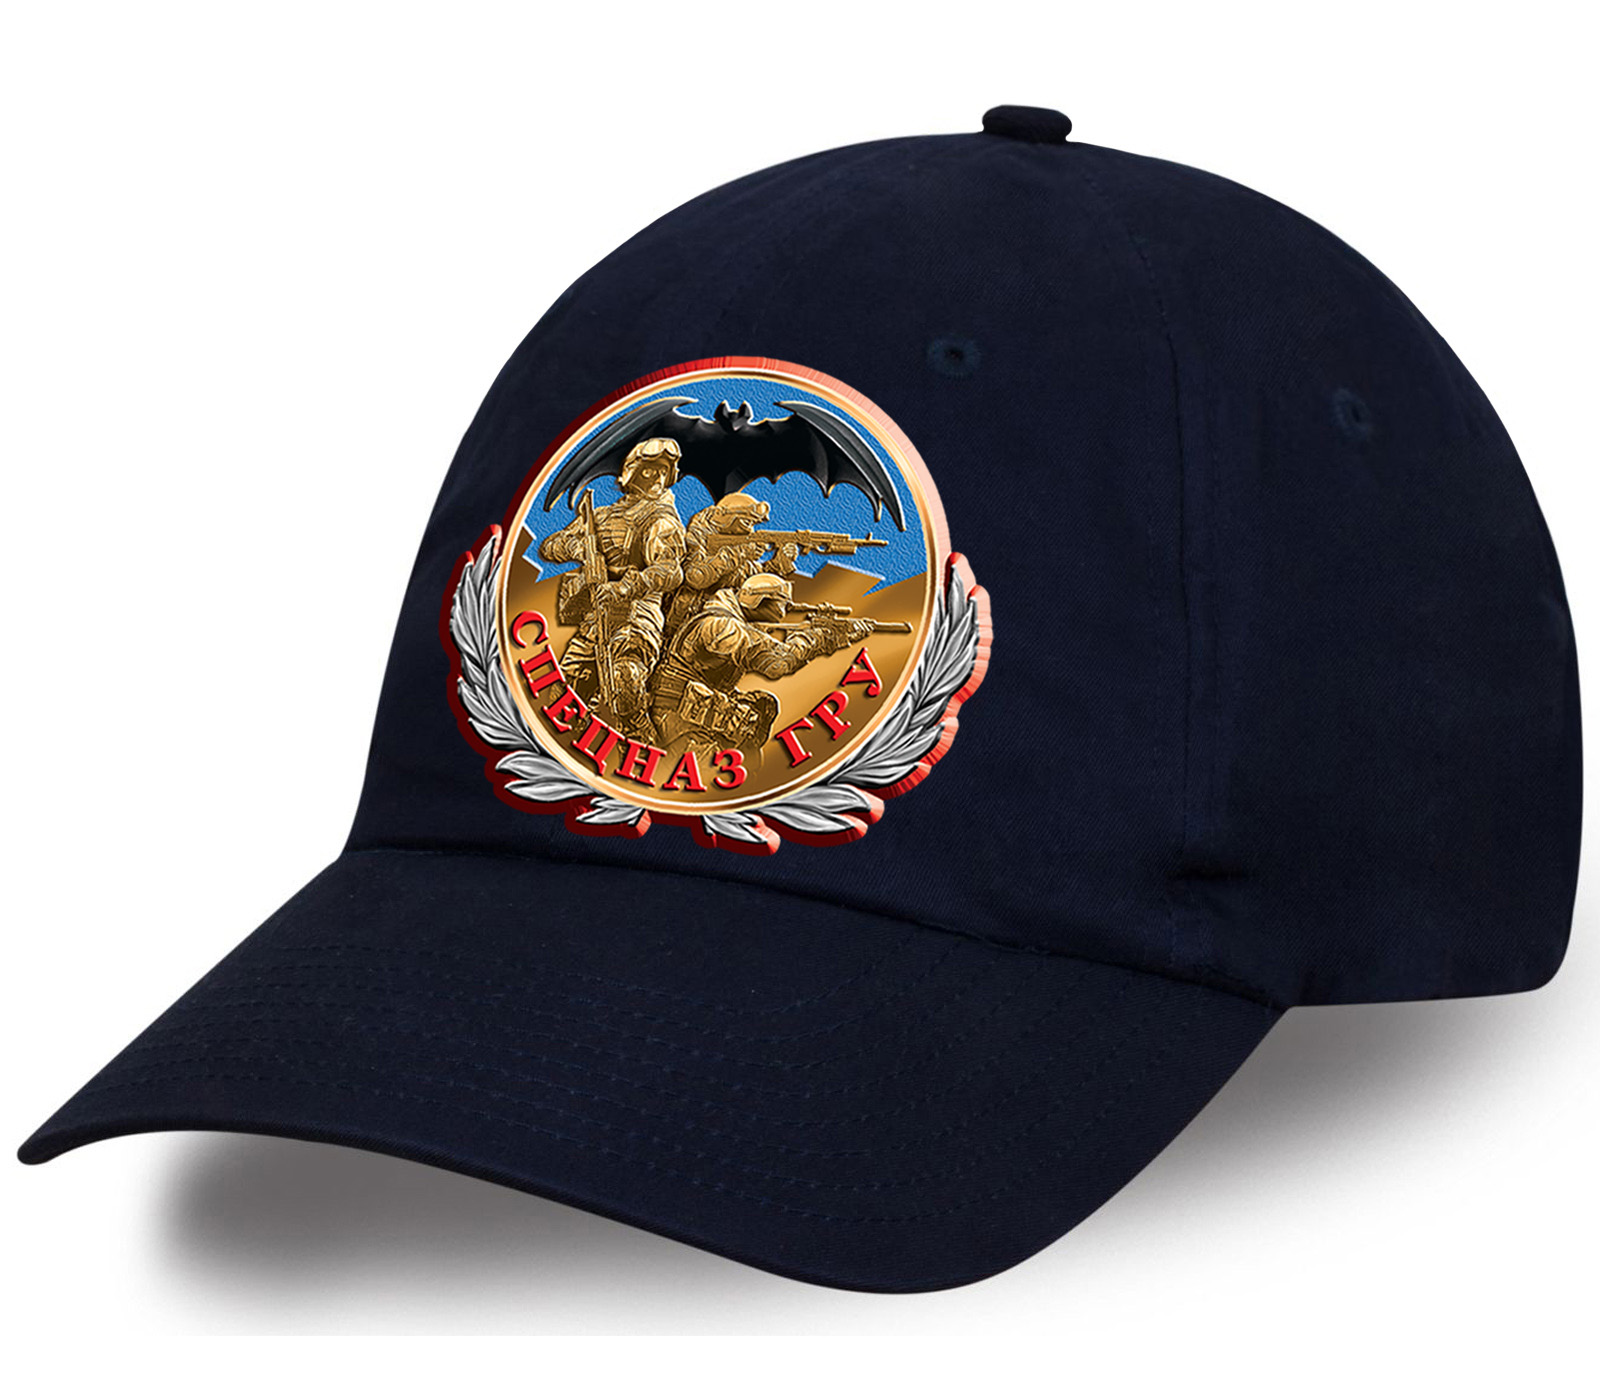 Мужская кепка с принтом ордена «Спецназ ГРУ» - вы хотите подарить оригинальный подарок? Мы презентуем Вам оригинальную кепку - торопитесь приобрести!